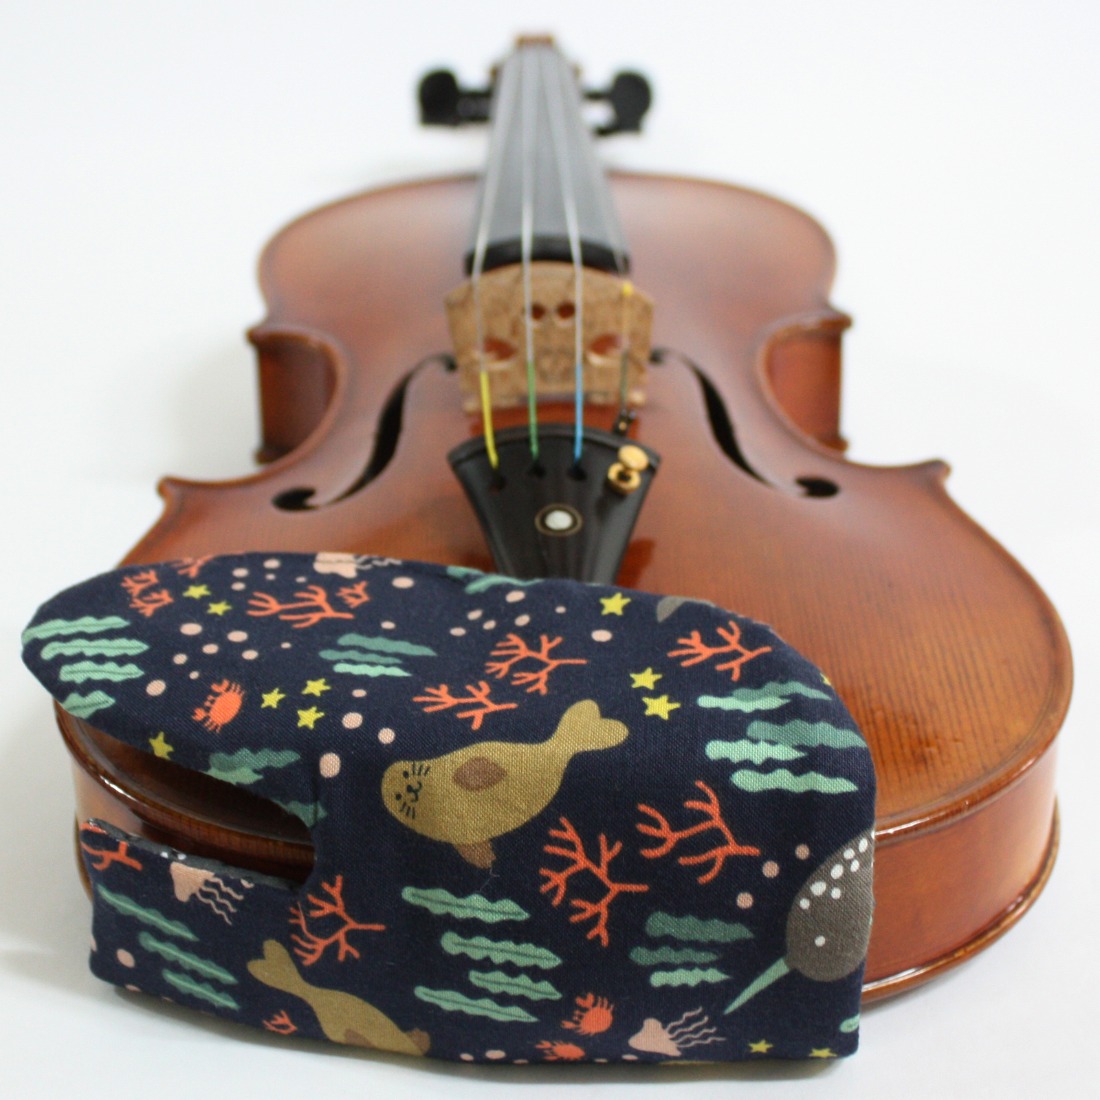 바이올린 턱받침 커버 Eno29